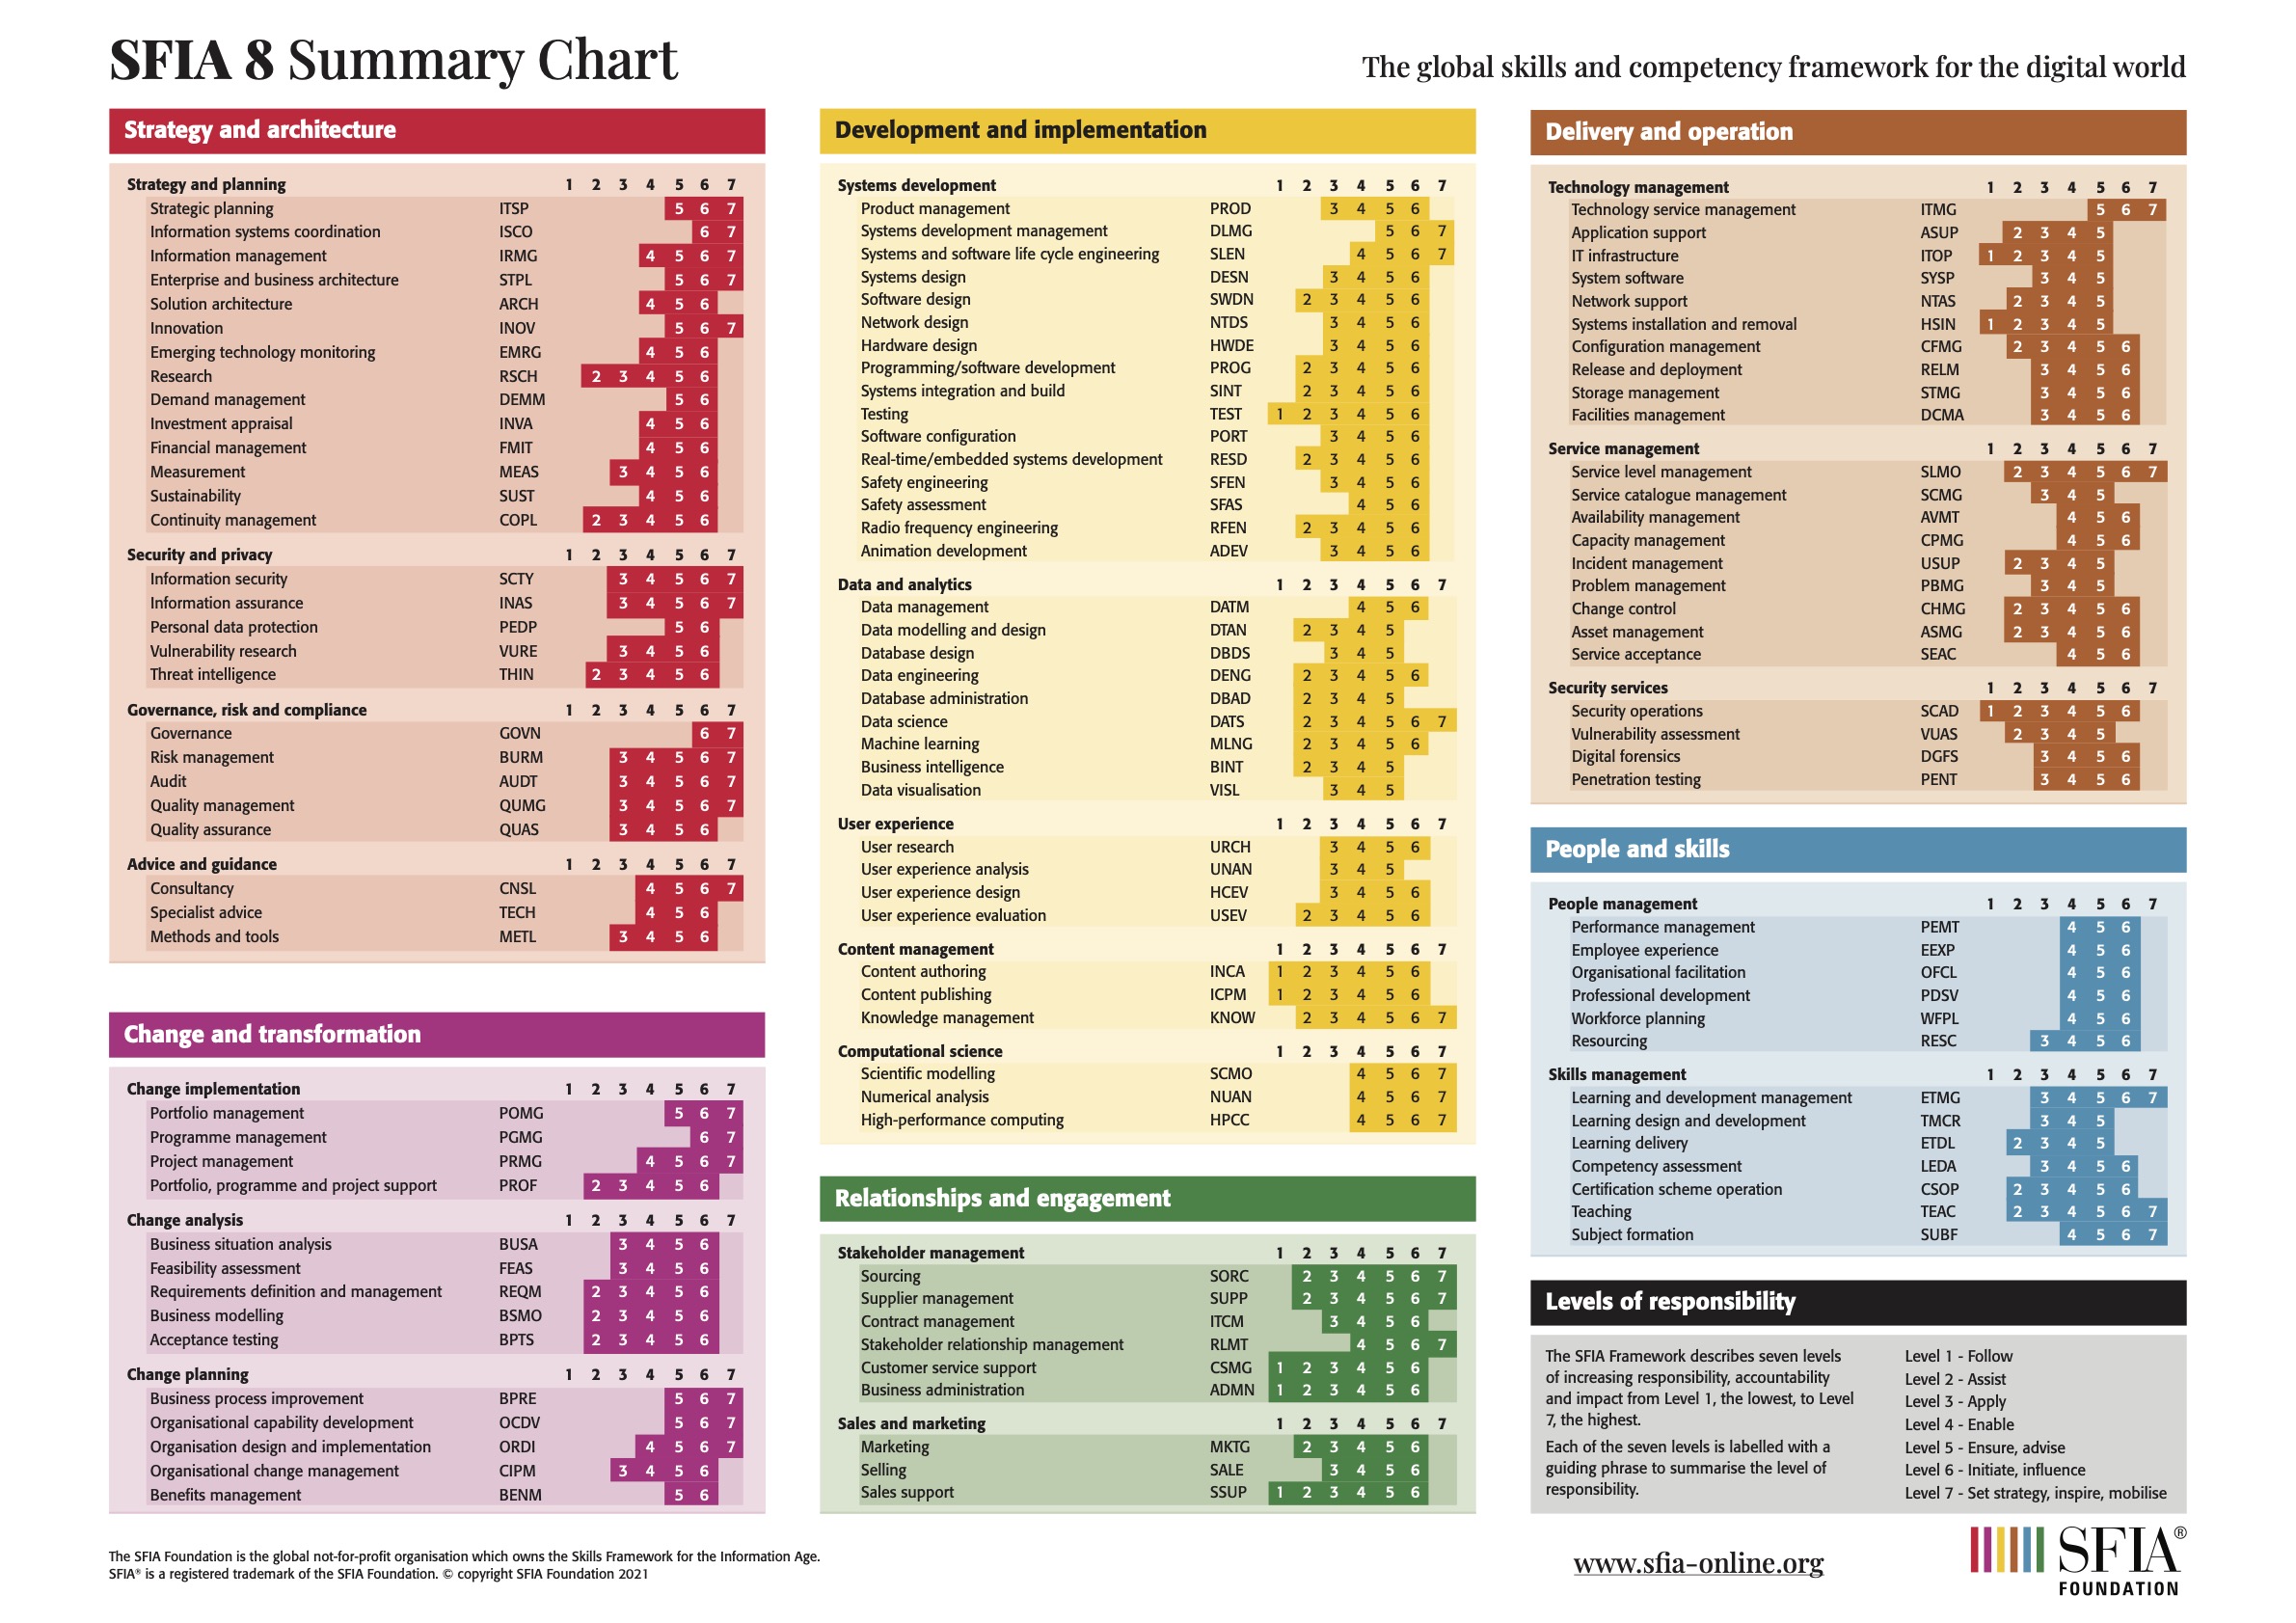 SFIA summmary chart